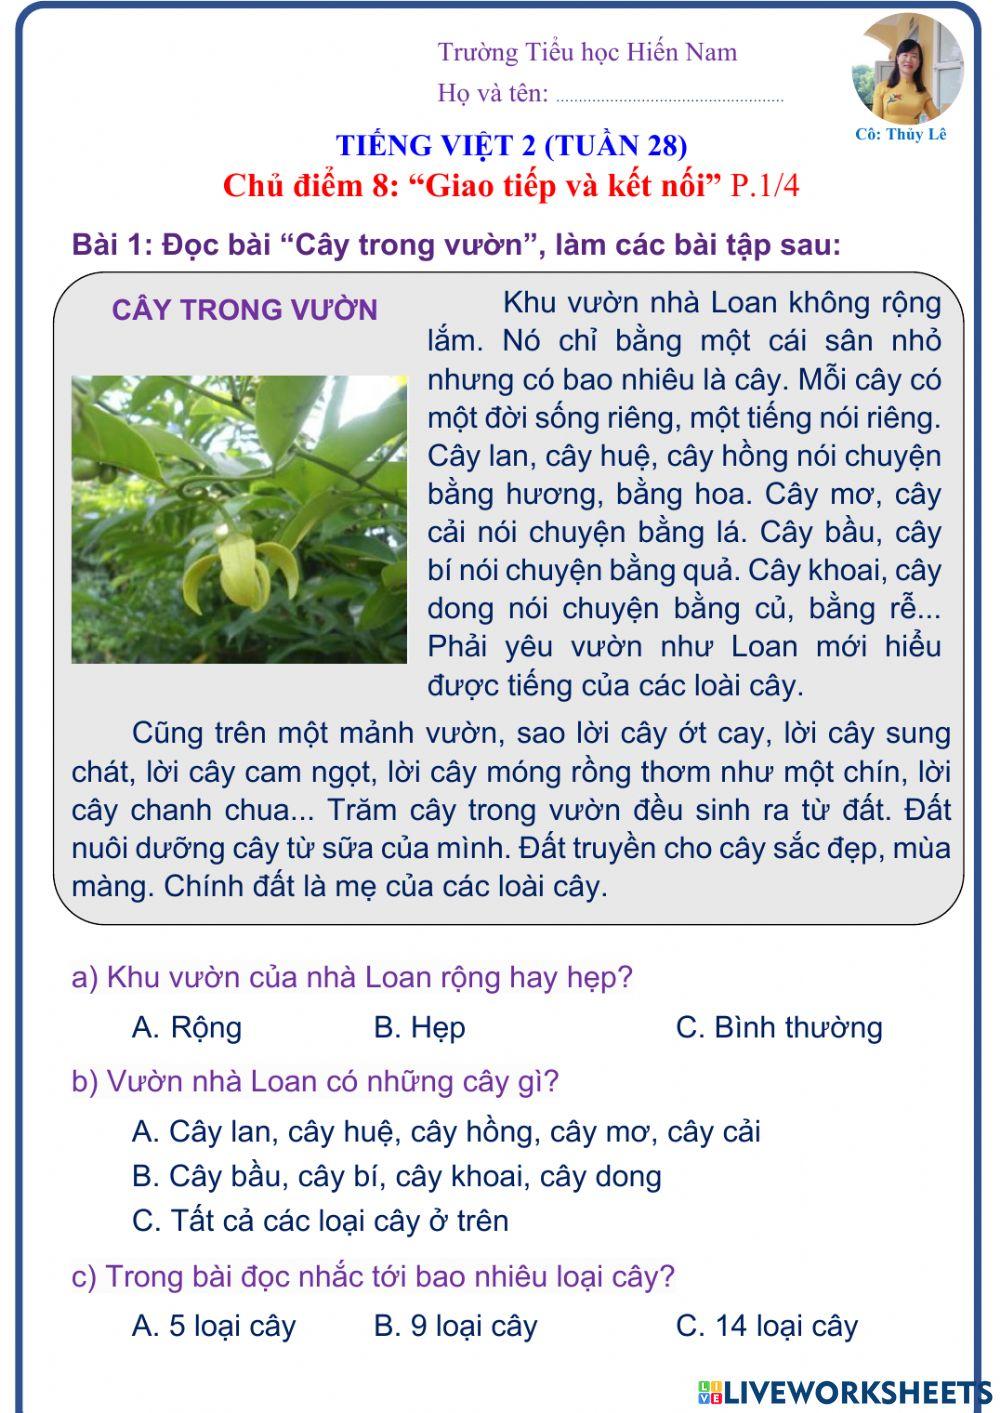 Tiếng Việt 2 (Tuần 28)